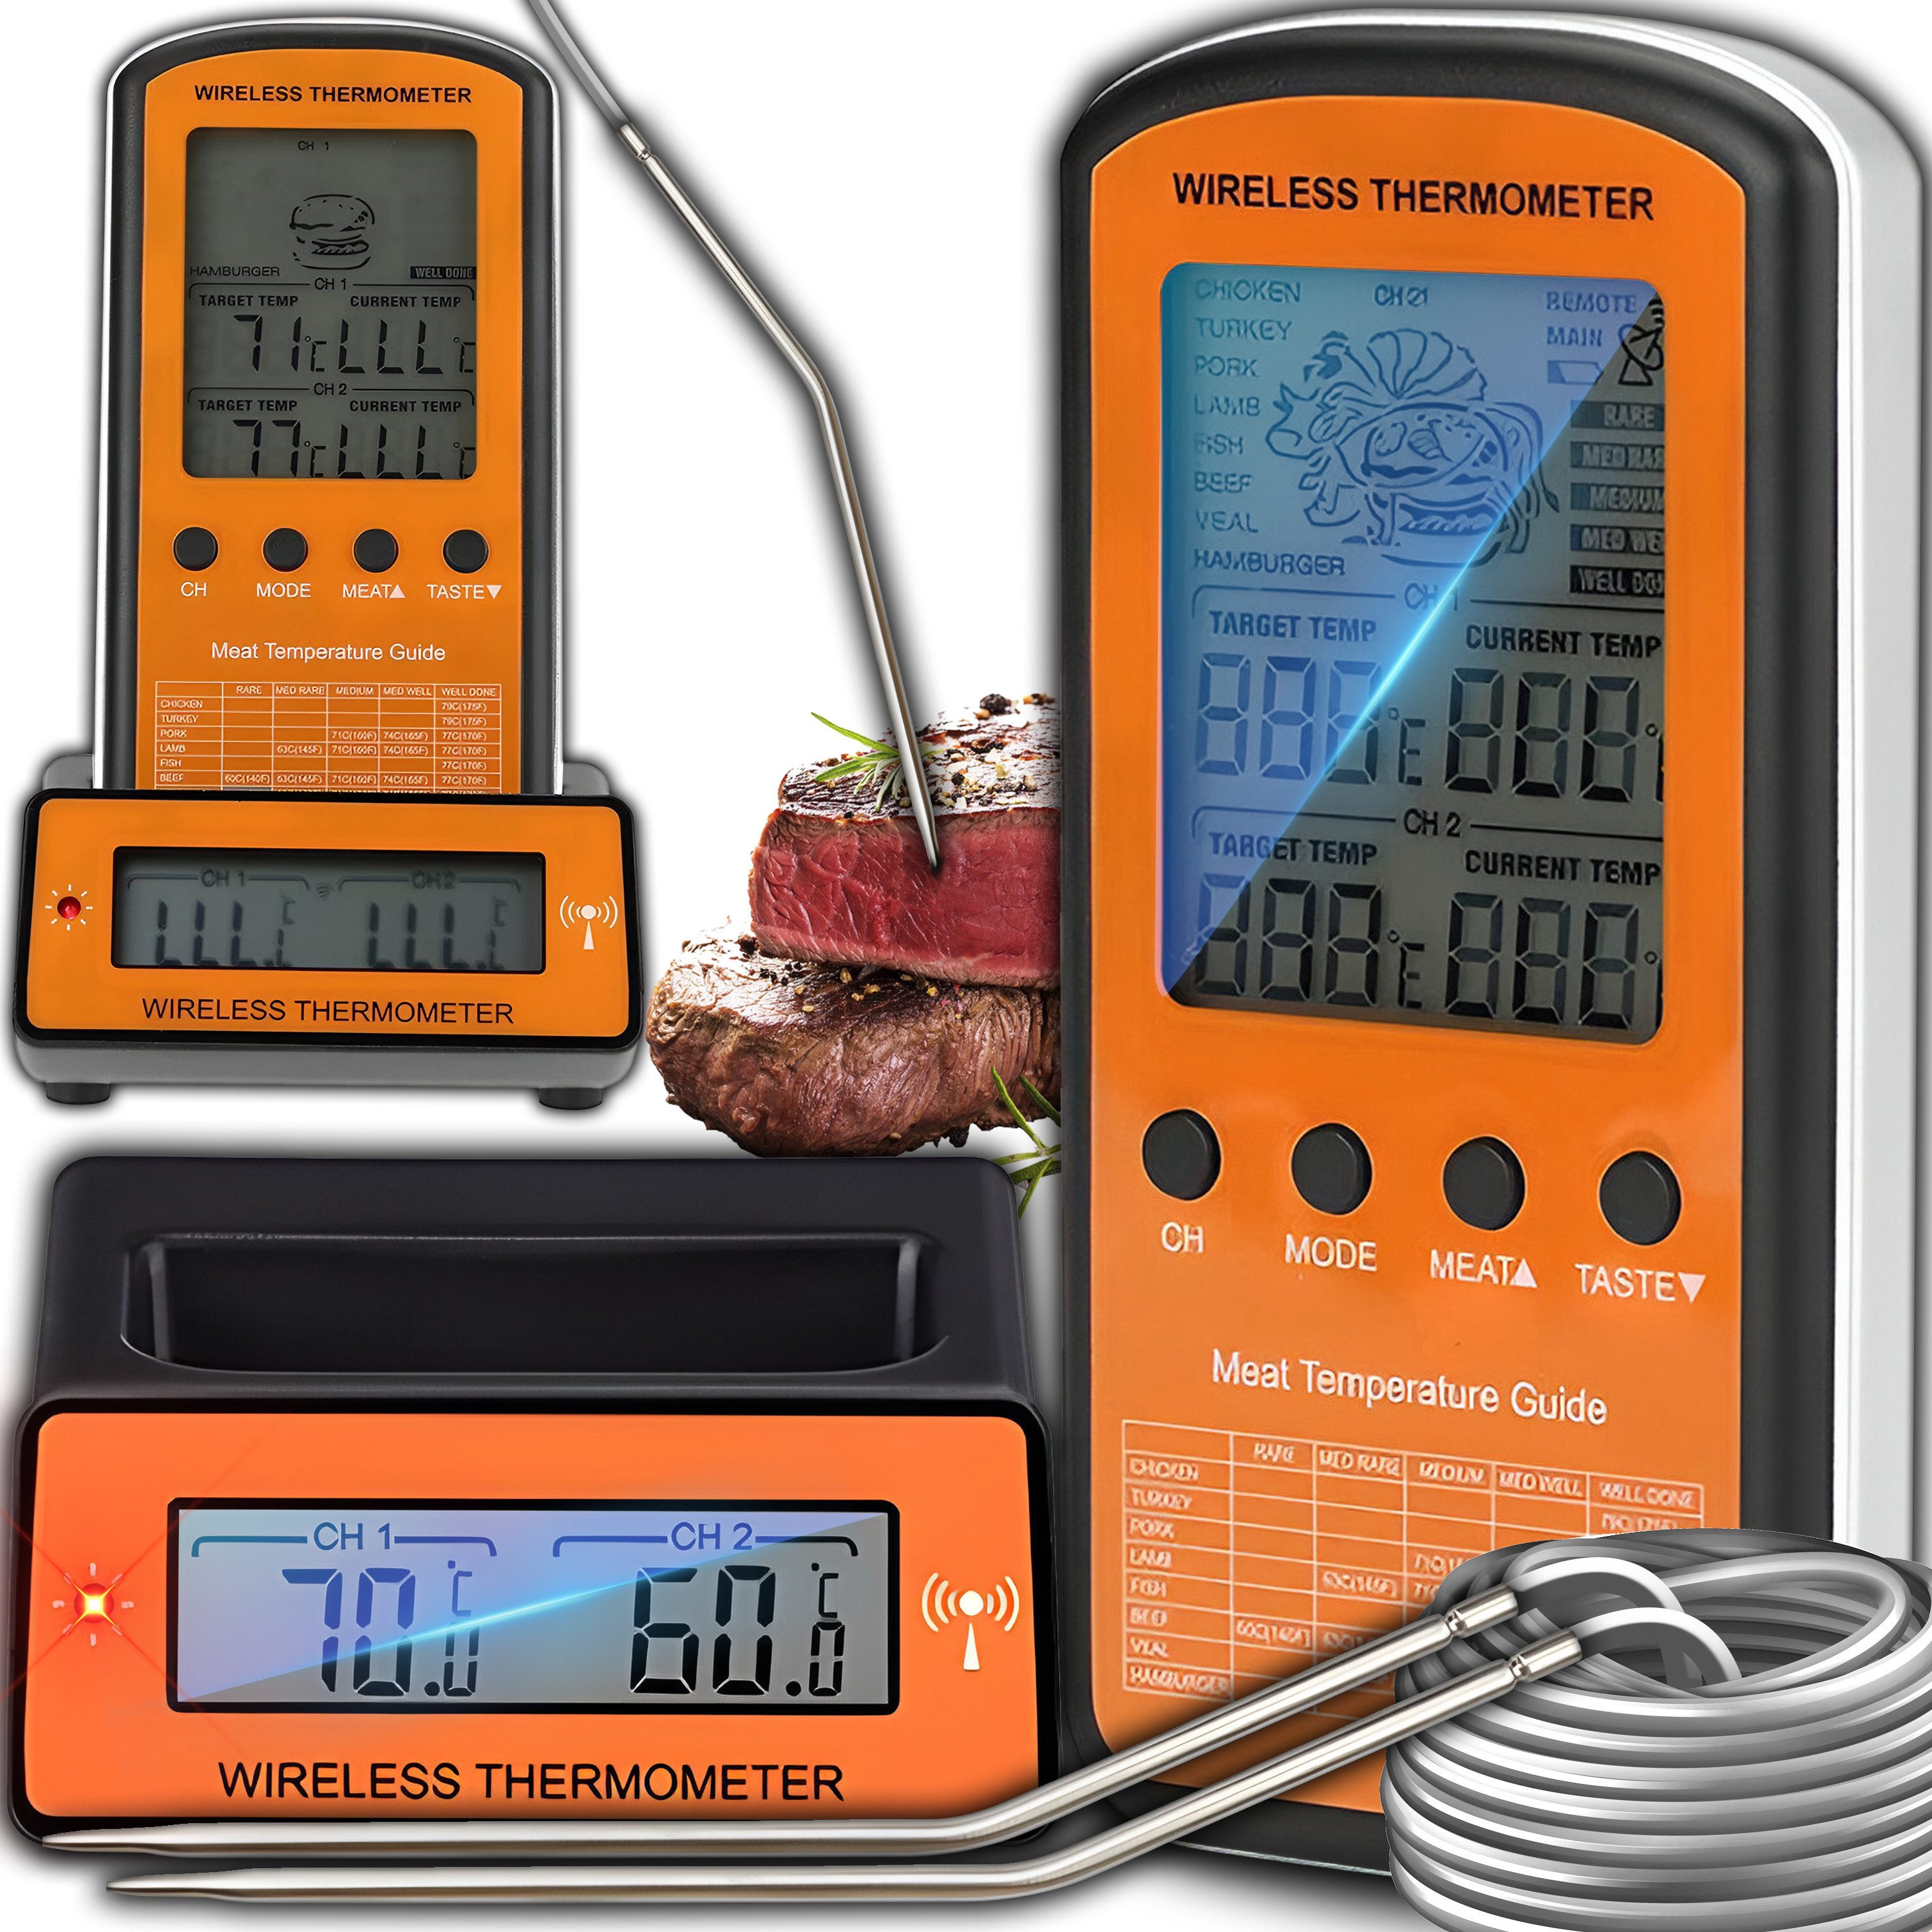 Retoo Grillthermometer Funk Grillthermometer 2 Sonden Braten Thermometer, Fleischthermometer, Set, Grillthermometer, 2x Elektroden, Ladestation, Präzise Temperaturmessung, Zeitersparnis, Vielseitigkeit, Mobilität